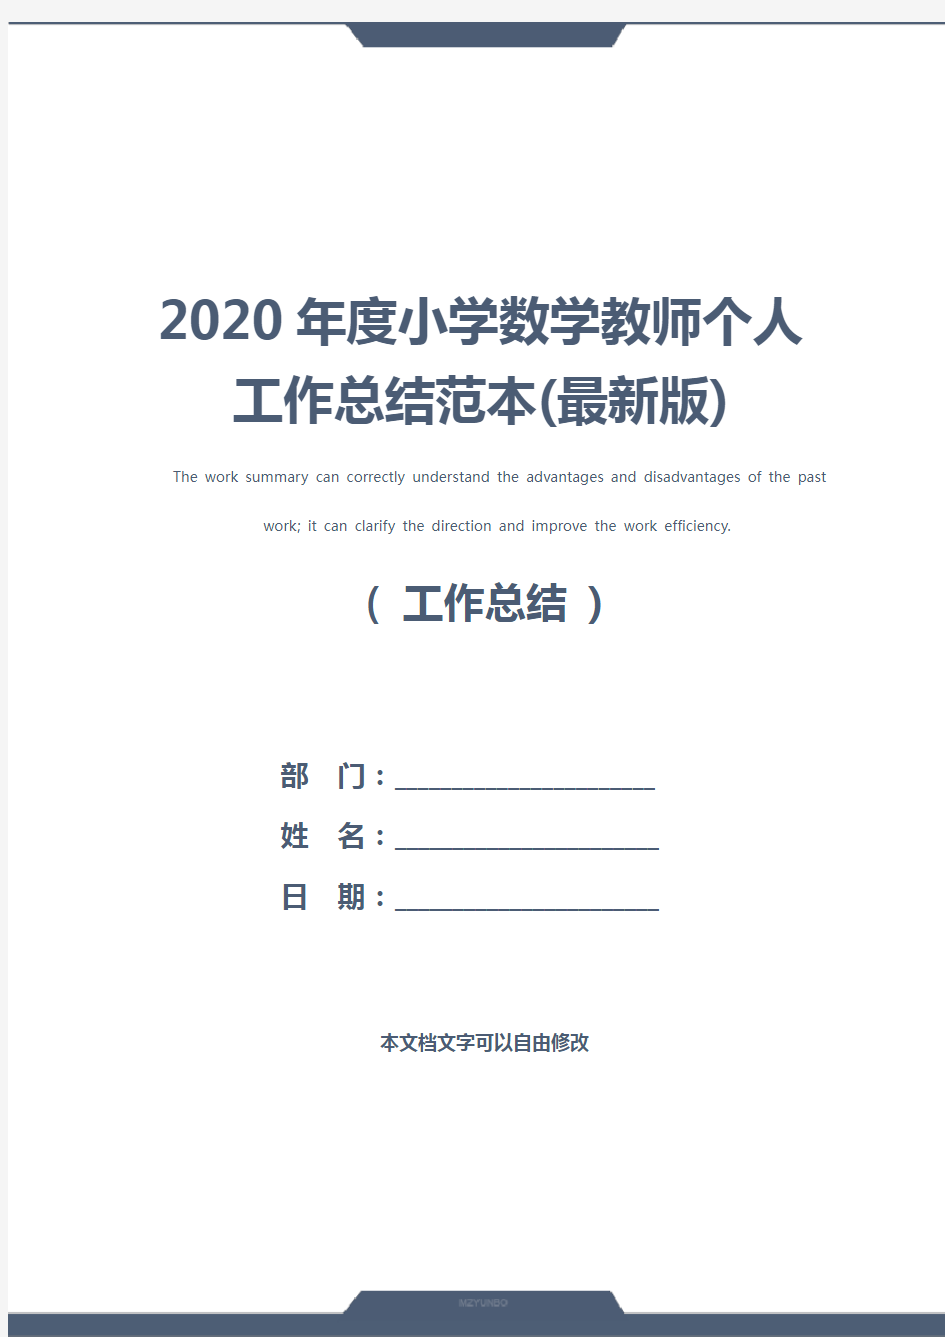 2020年度小学数学教师个人工作总结范本(最新版)